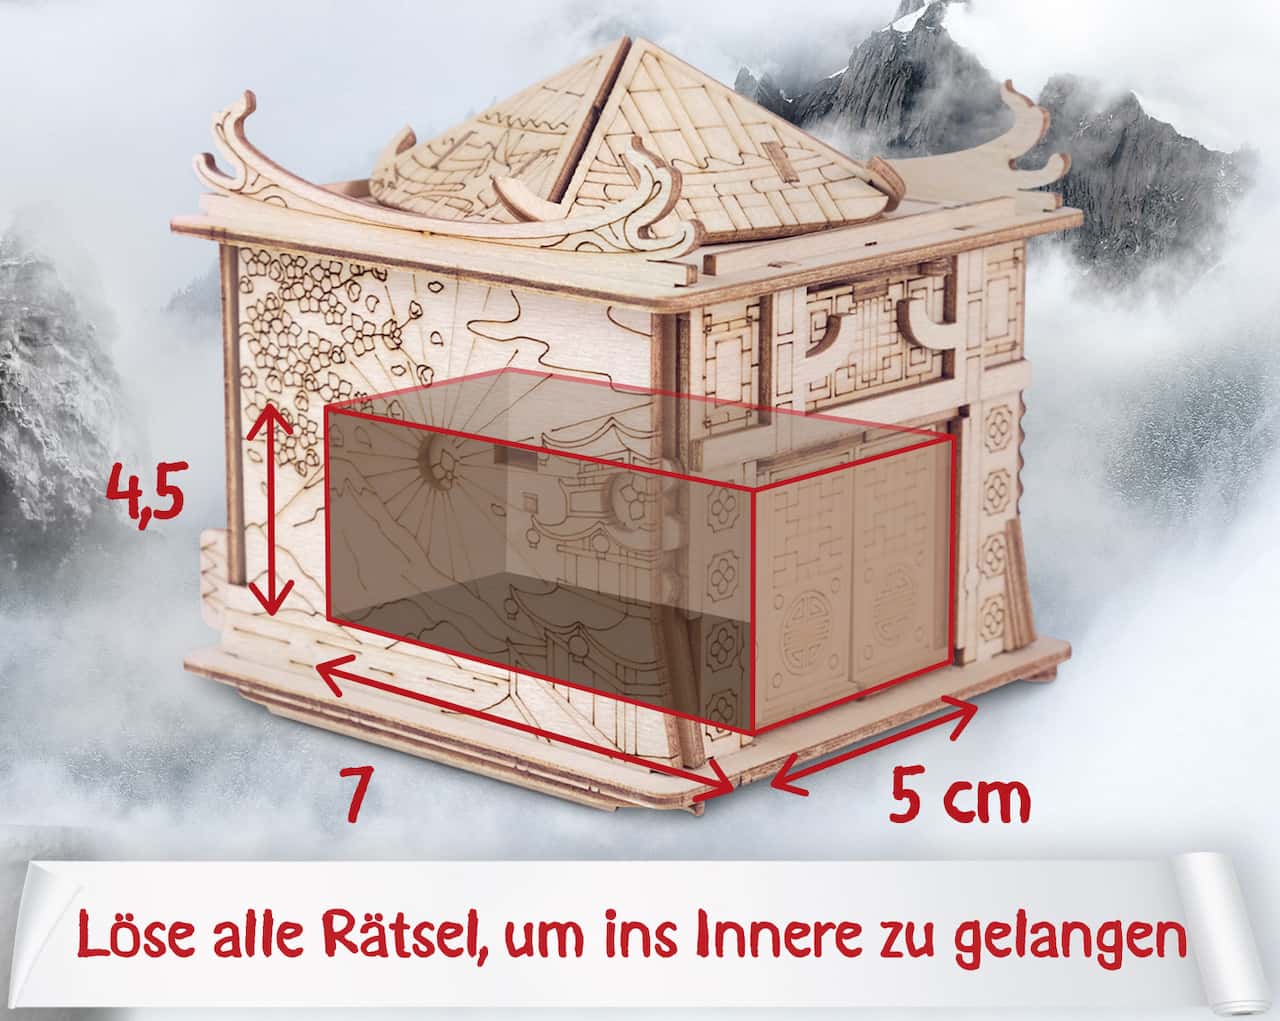 HOUSE OF THE DRAGON - schwierige Cluebox mit tollen Rätseln